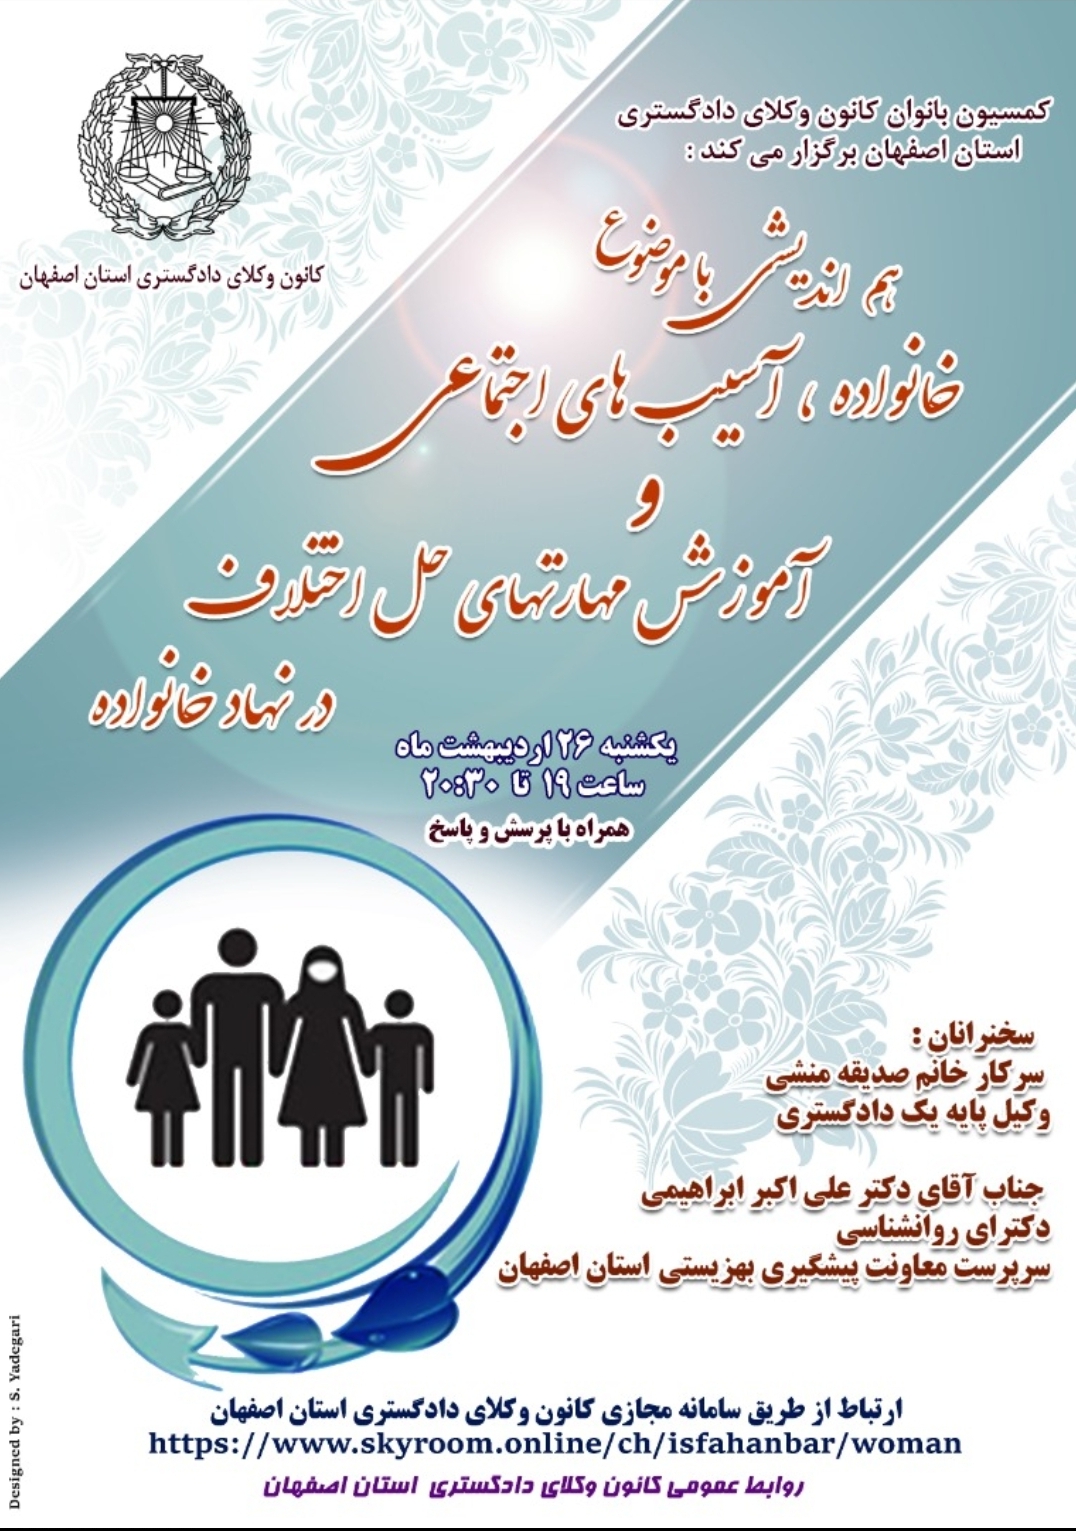 کمسیون بانوان کانون وکلای دادگستری استان اصفهان به مناسبت روز جهانی خانواده  برگزار میکند